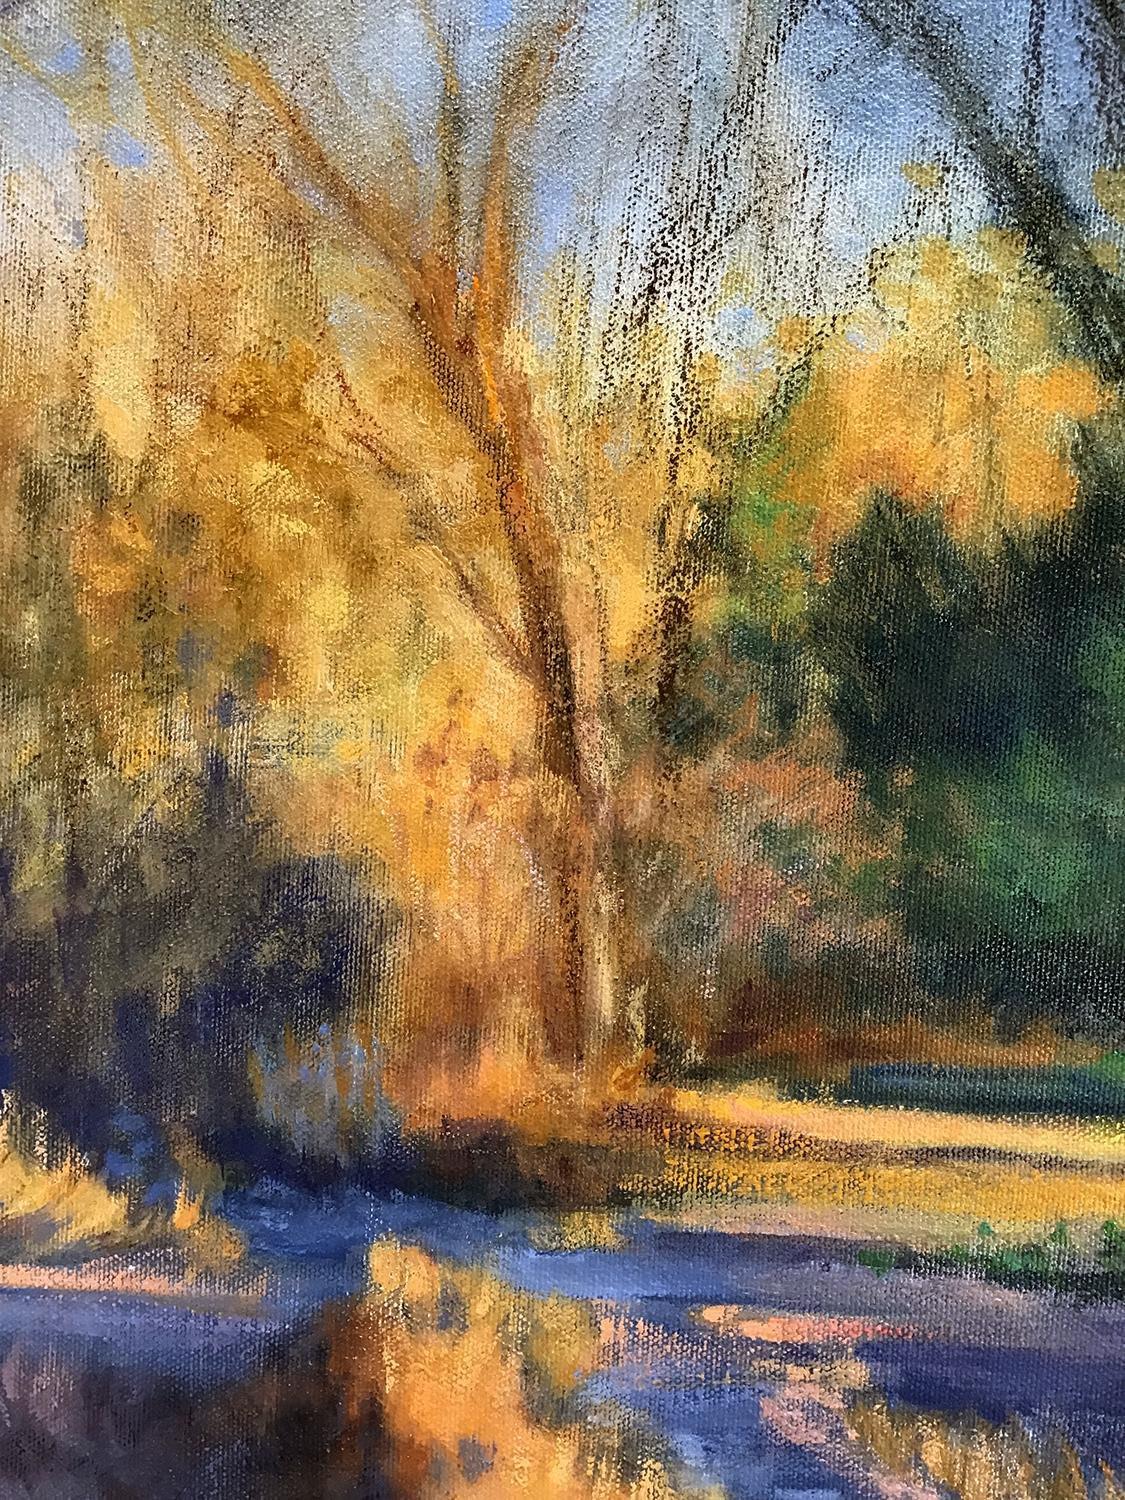 <p>Kommentare des Künstlers<br>Die Künstlerin Elizabeth Garat malt einen verführerischen, leeren Wald im Hinterhof, der in den goldenen Sonnenuntergang getaucht ist. Das knackige Herbstlaub verwandelt das Gelände in ein leuchtendes Braun, das Wärme